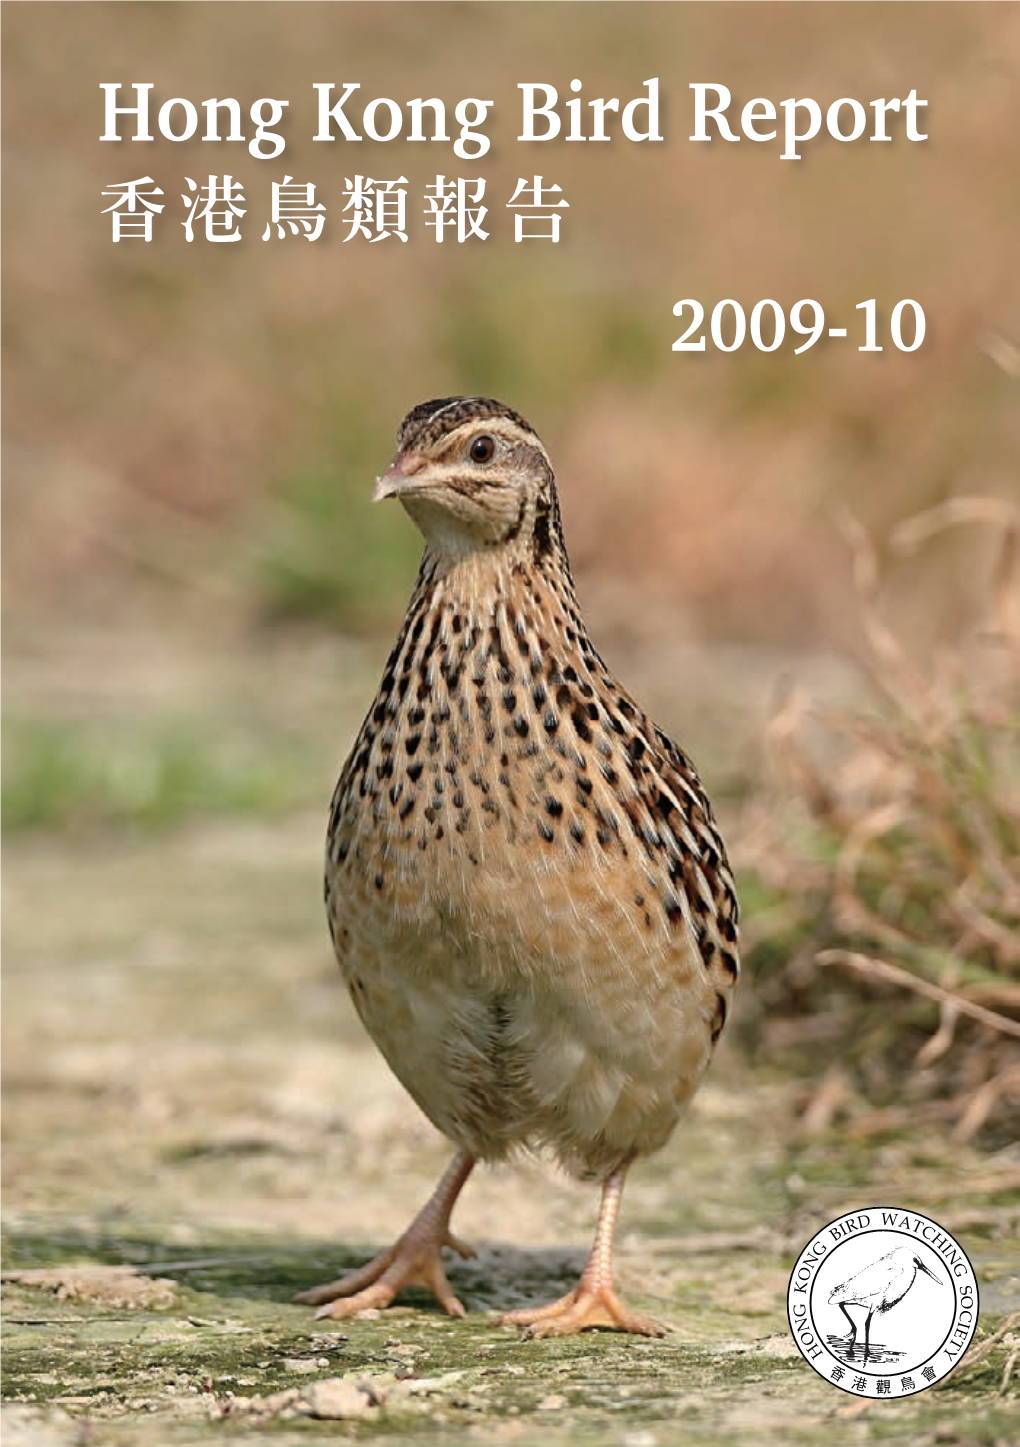 Hong Kong Bird Report